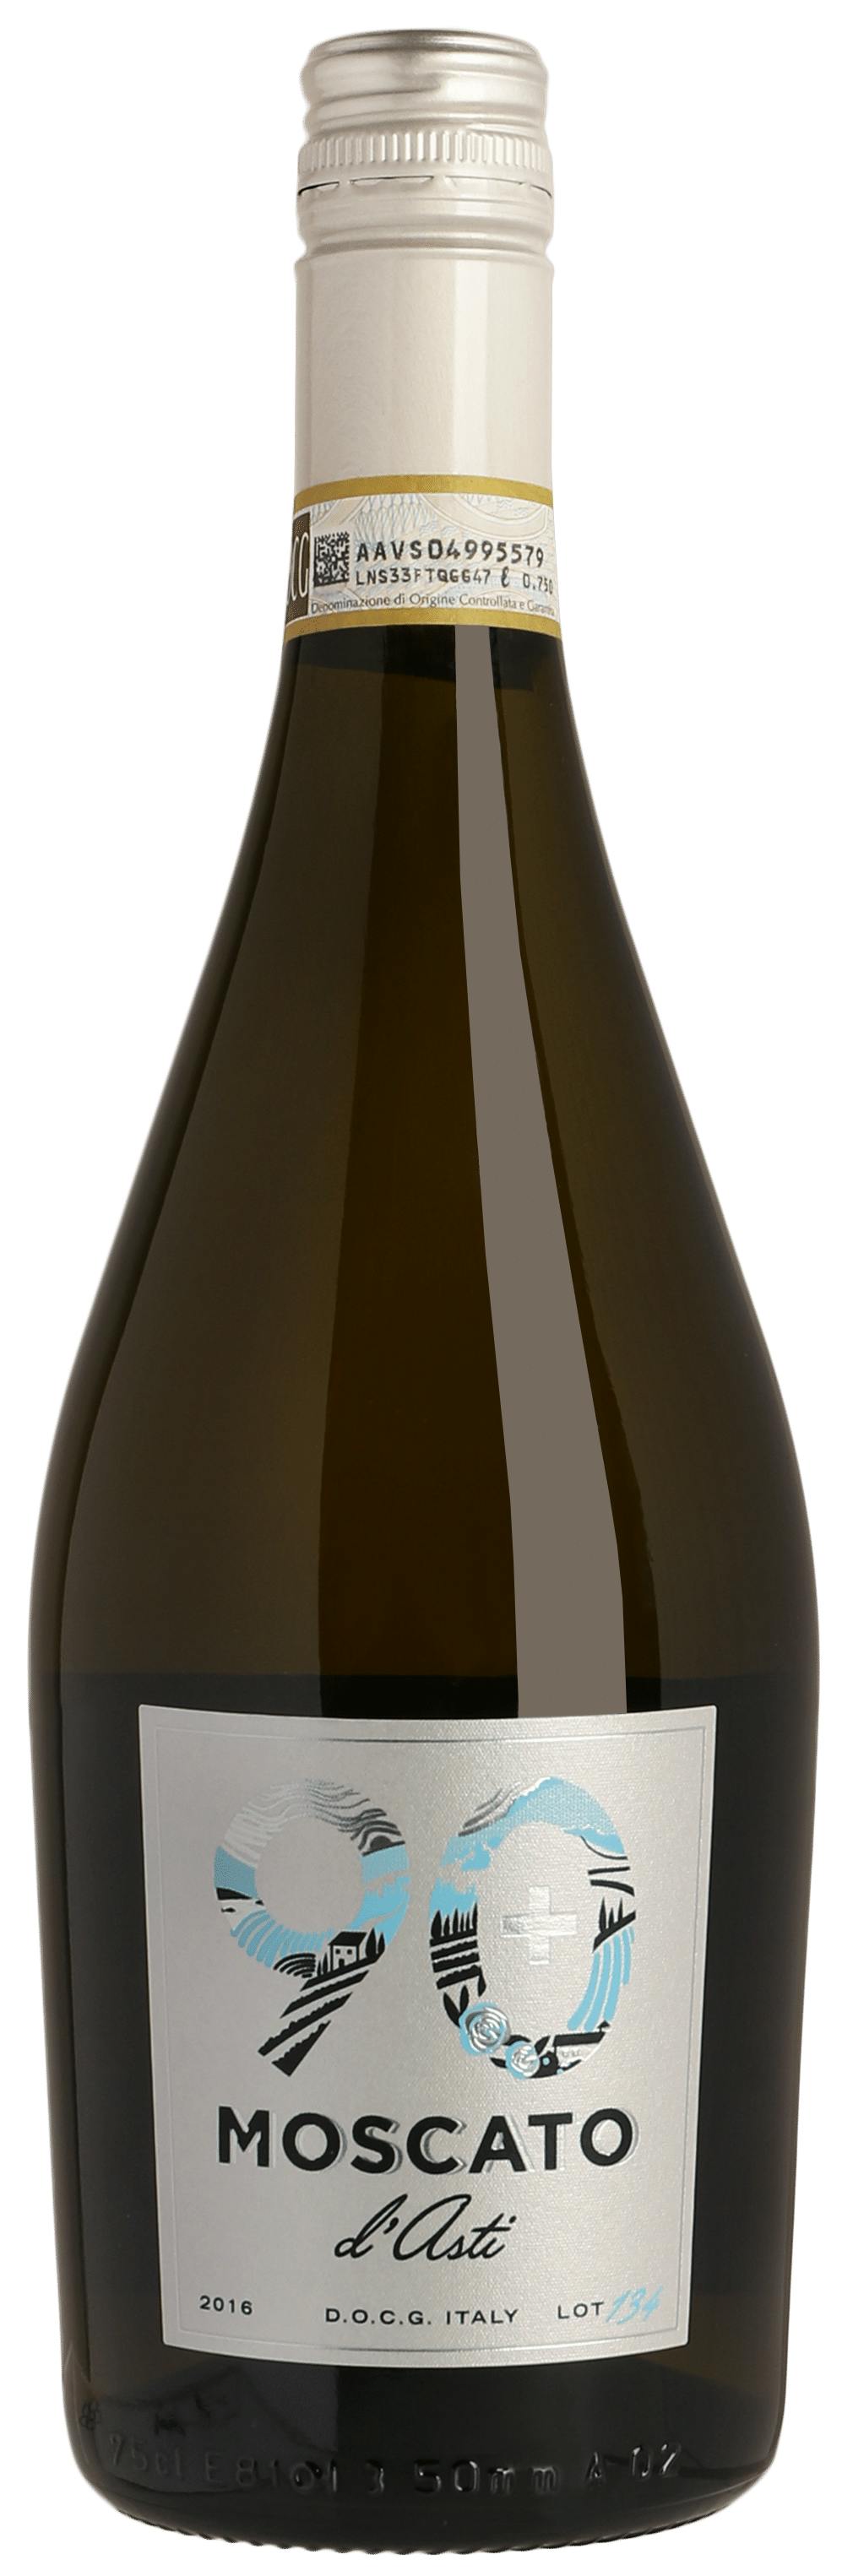 La Marca Prosecco Sparkling White Wine, 6 Pack, 187ml Bottle